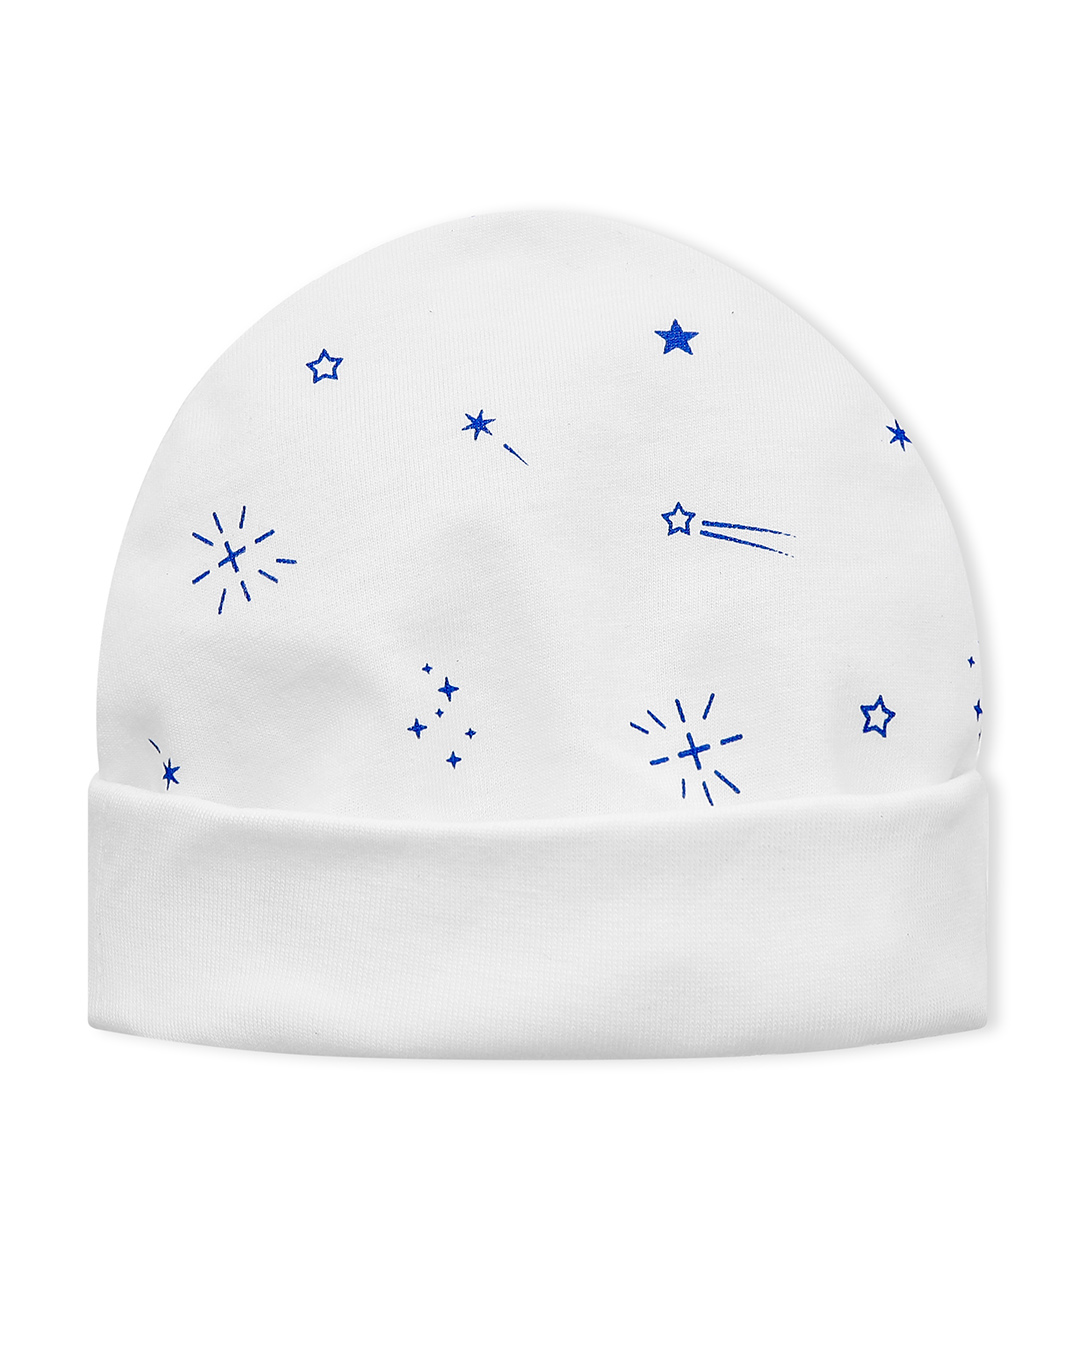 Set nón, bao tay bao chân in hình sao băng IQ Baby màu trắng (0 - 6 tháng)